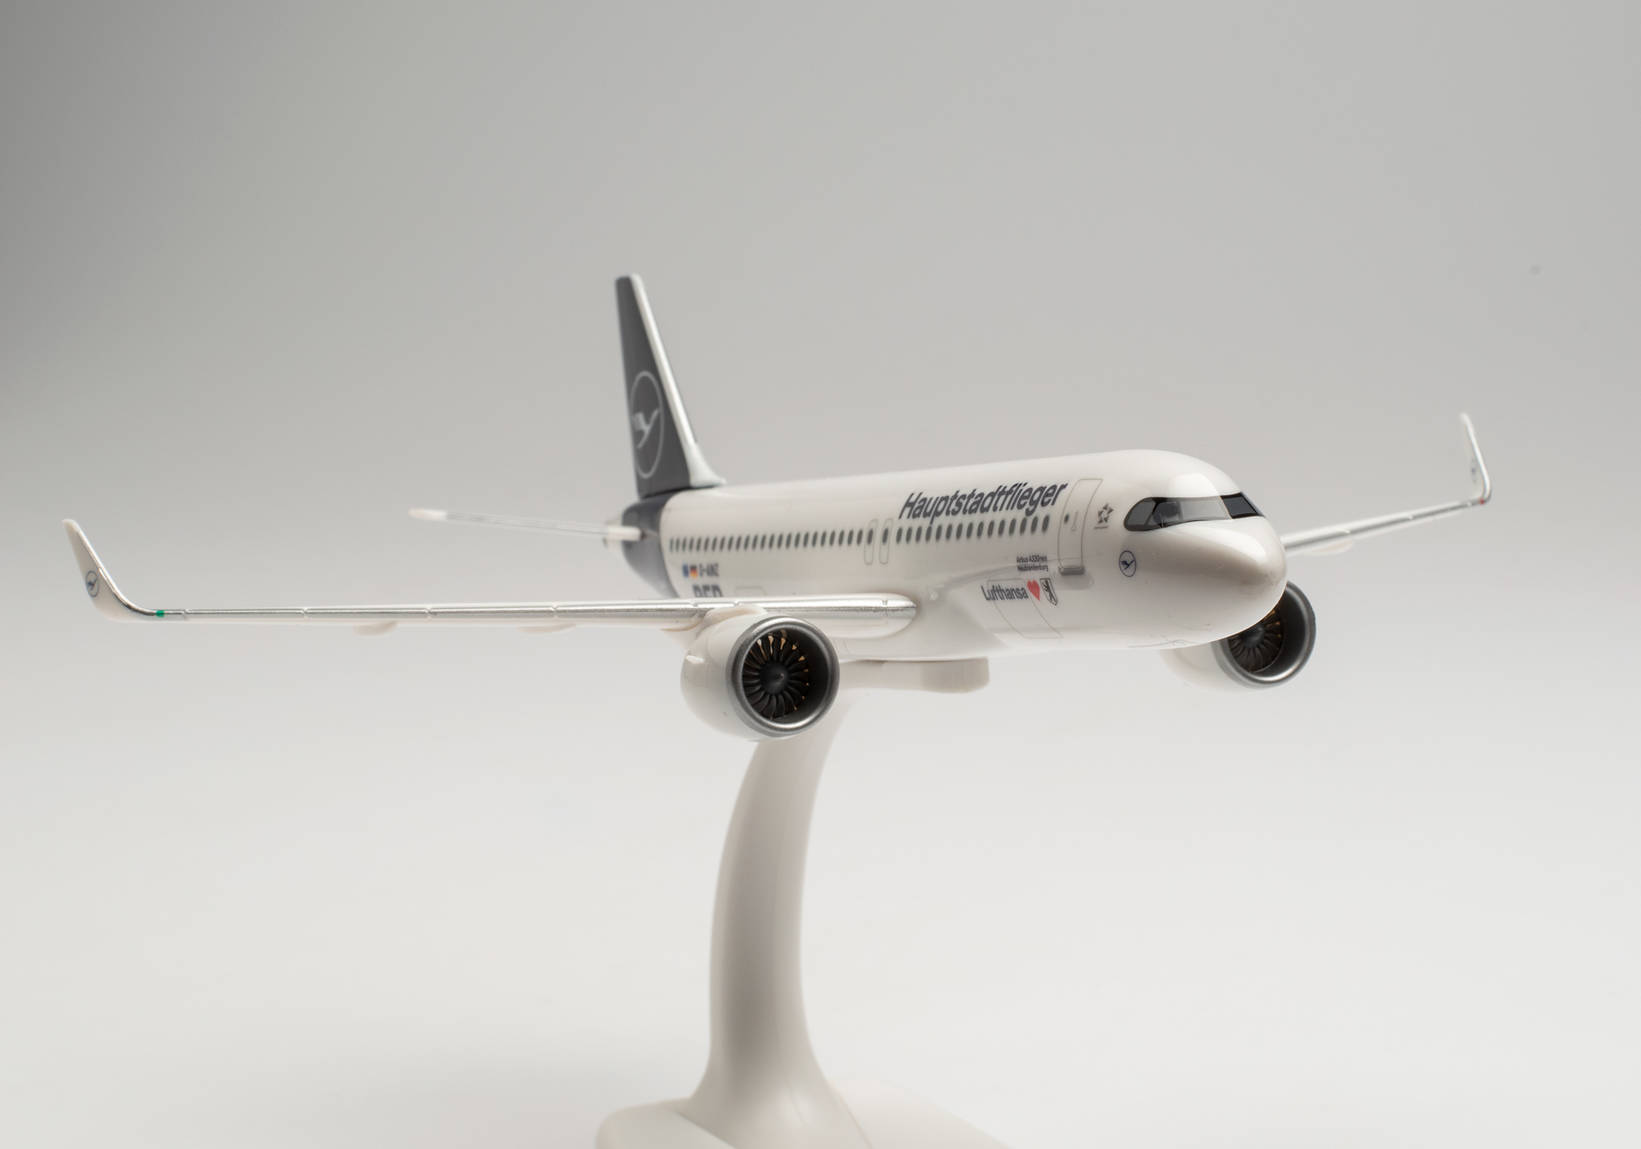 Lufthansa Airbus A320neo “Hauptstadtflieger” – D-AINZ “Berlin”